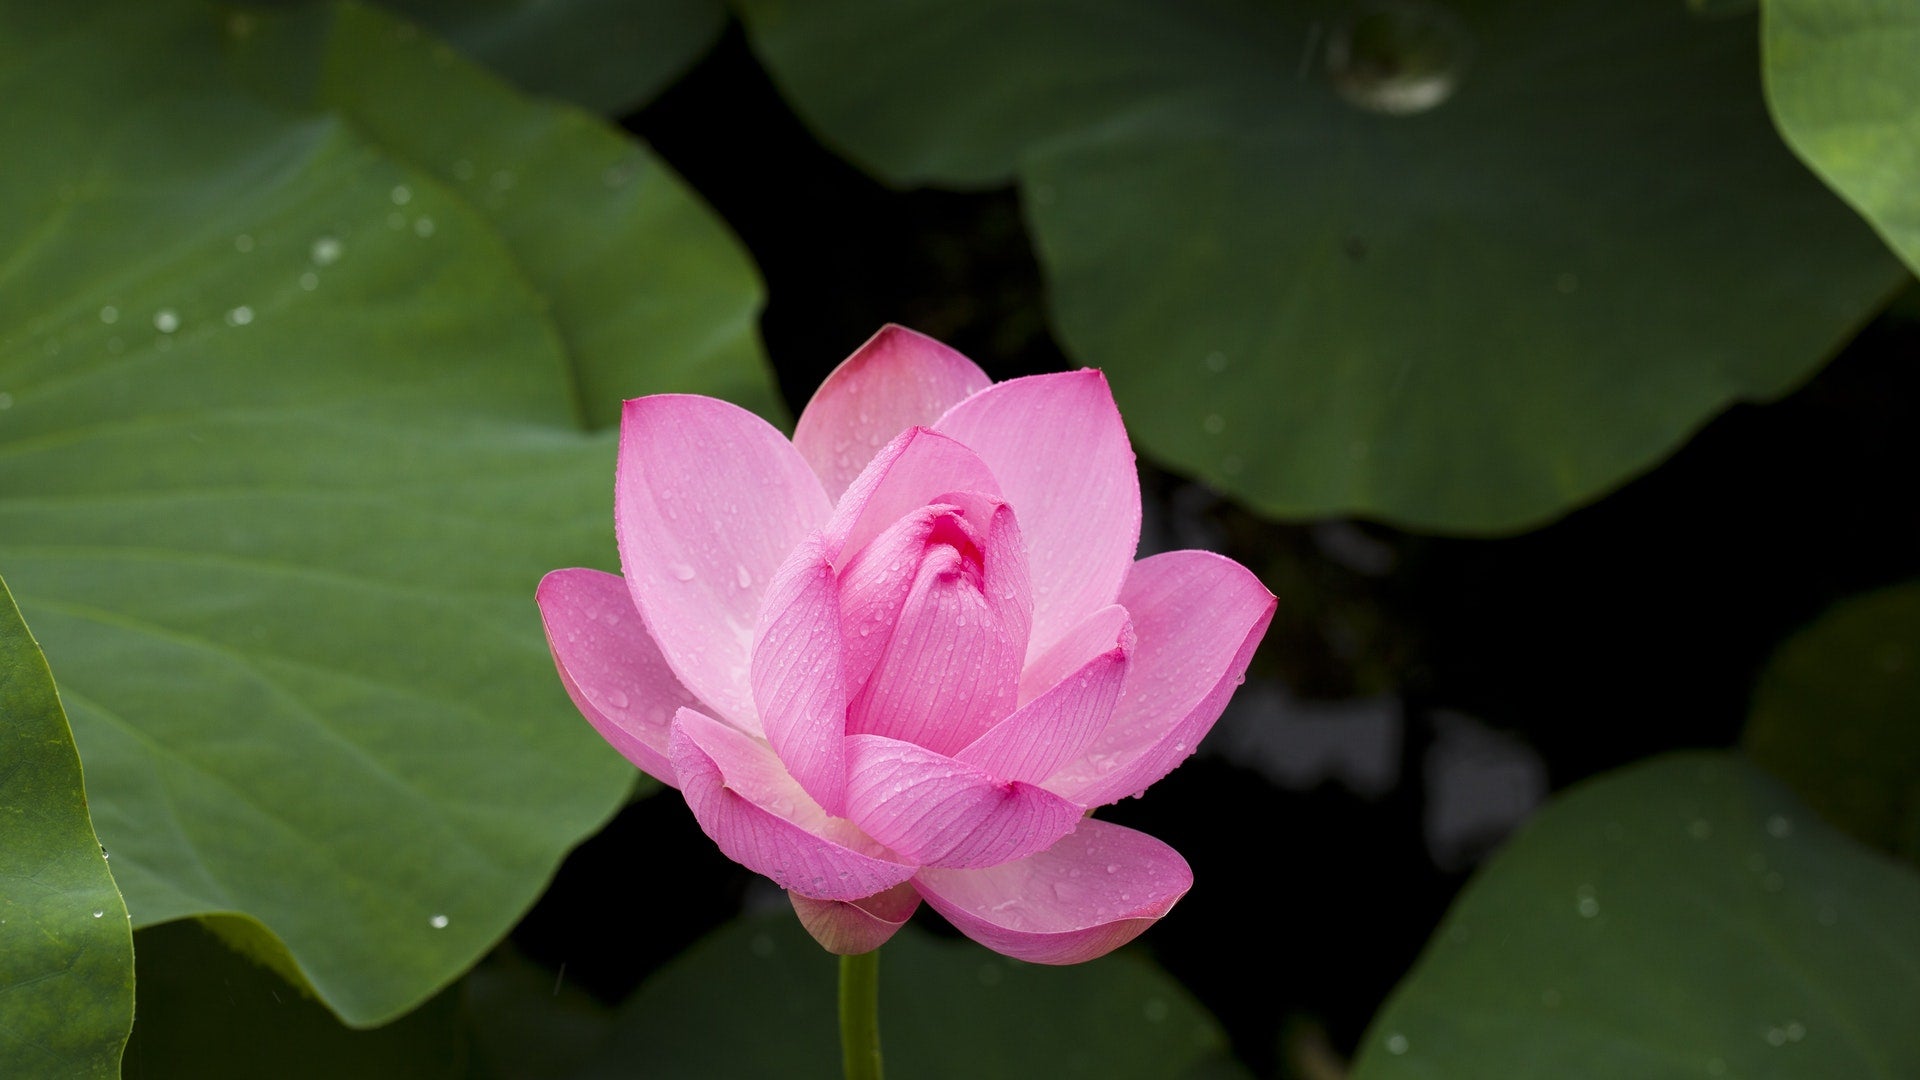 Fiore di loto rosa. Fiori di Loto: Caratteristiche, Significato e Leggenda